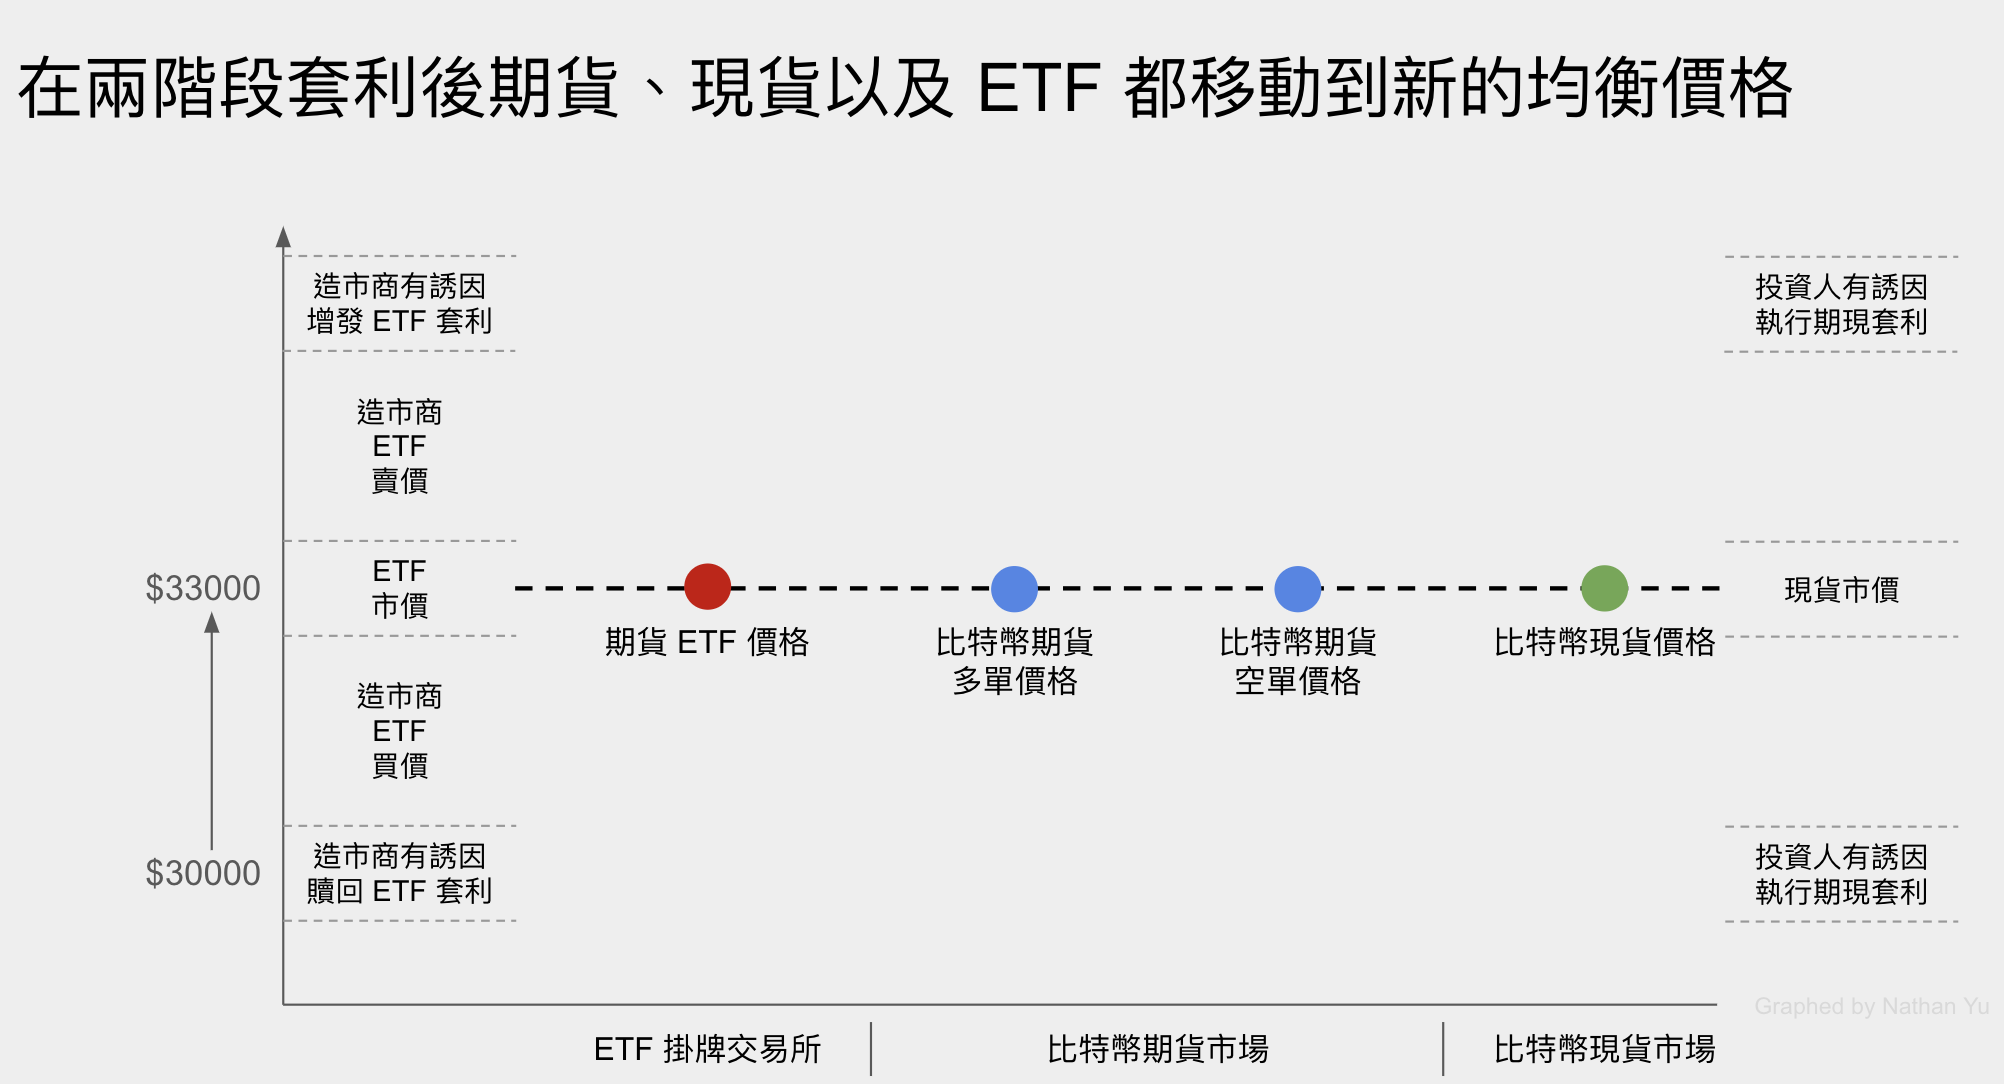 在兩階段套利後期貨、現貨以及 ETF 都移動到新的均衡價格